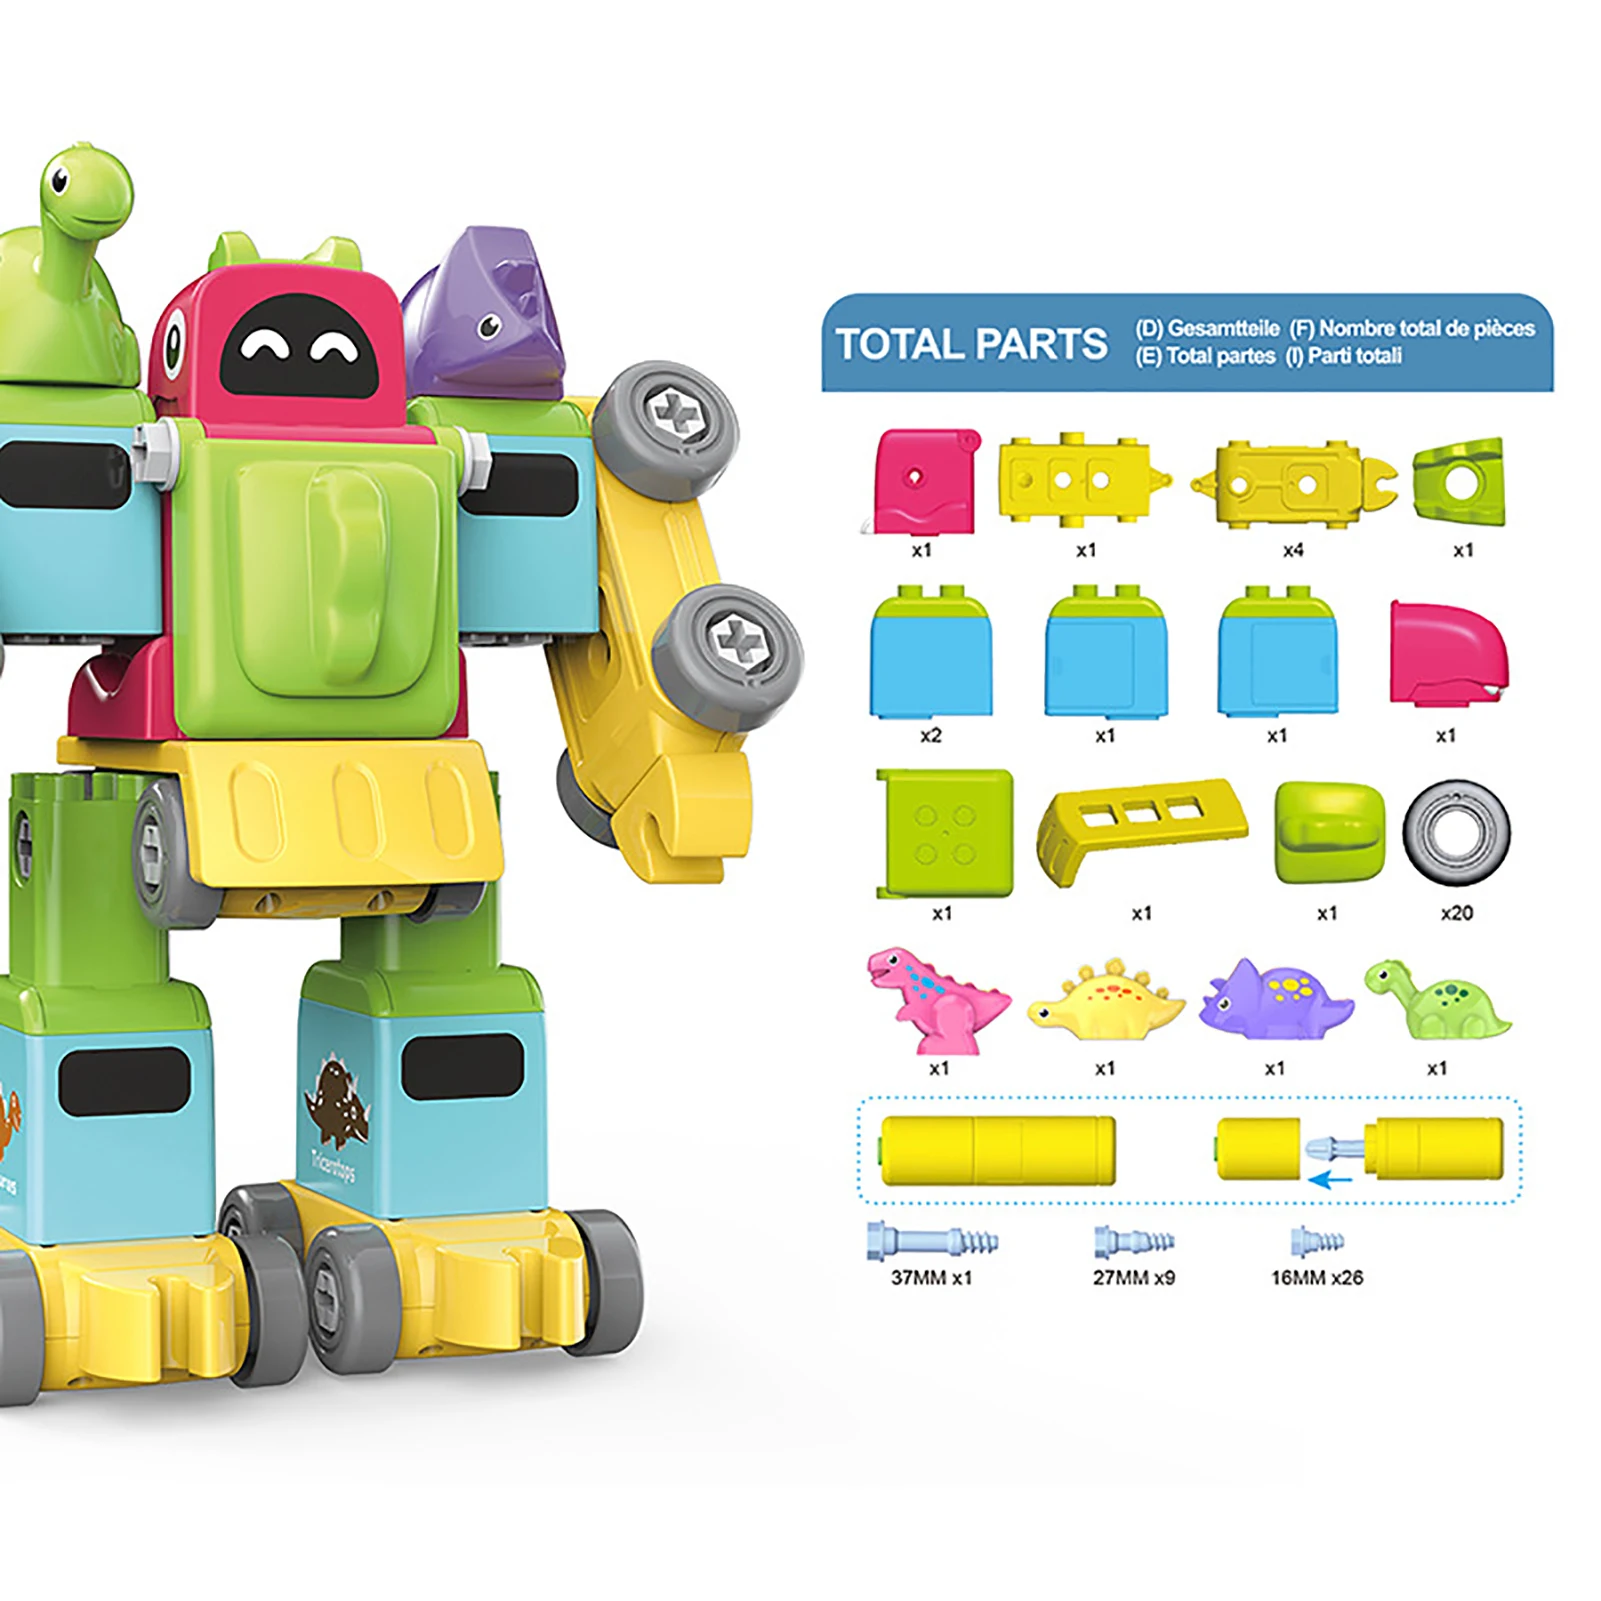 

Игрушечный робот-динозавр 5 в 1, поезд, игрушки-роботы для детей, строительные игрушки, набор транспортных средств для детей, подарок на день ...